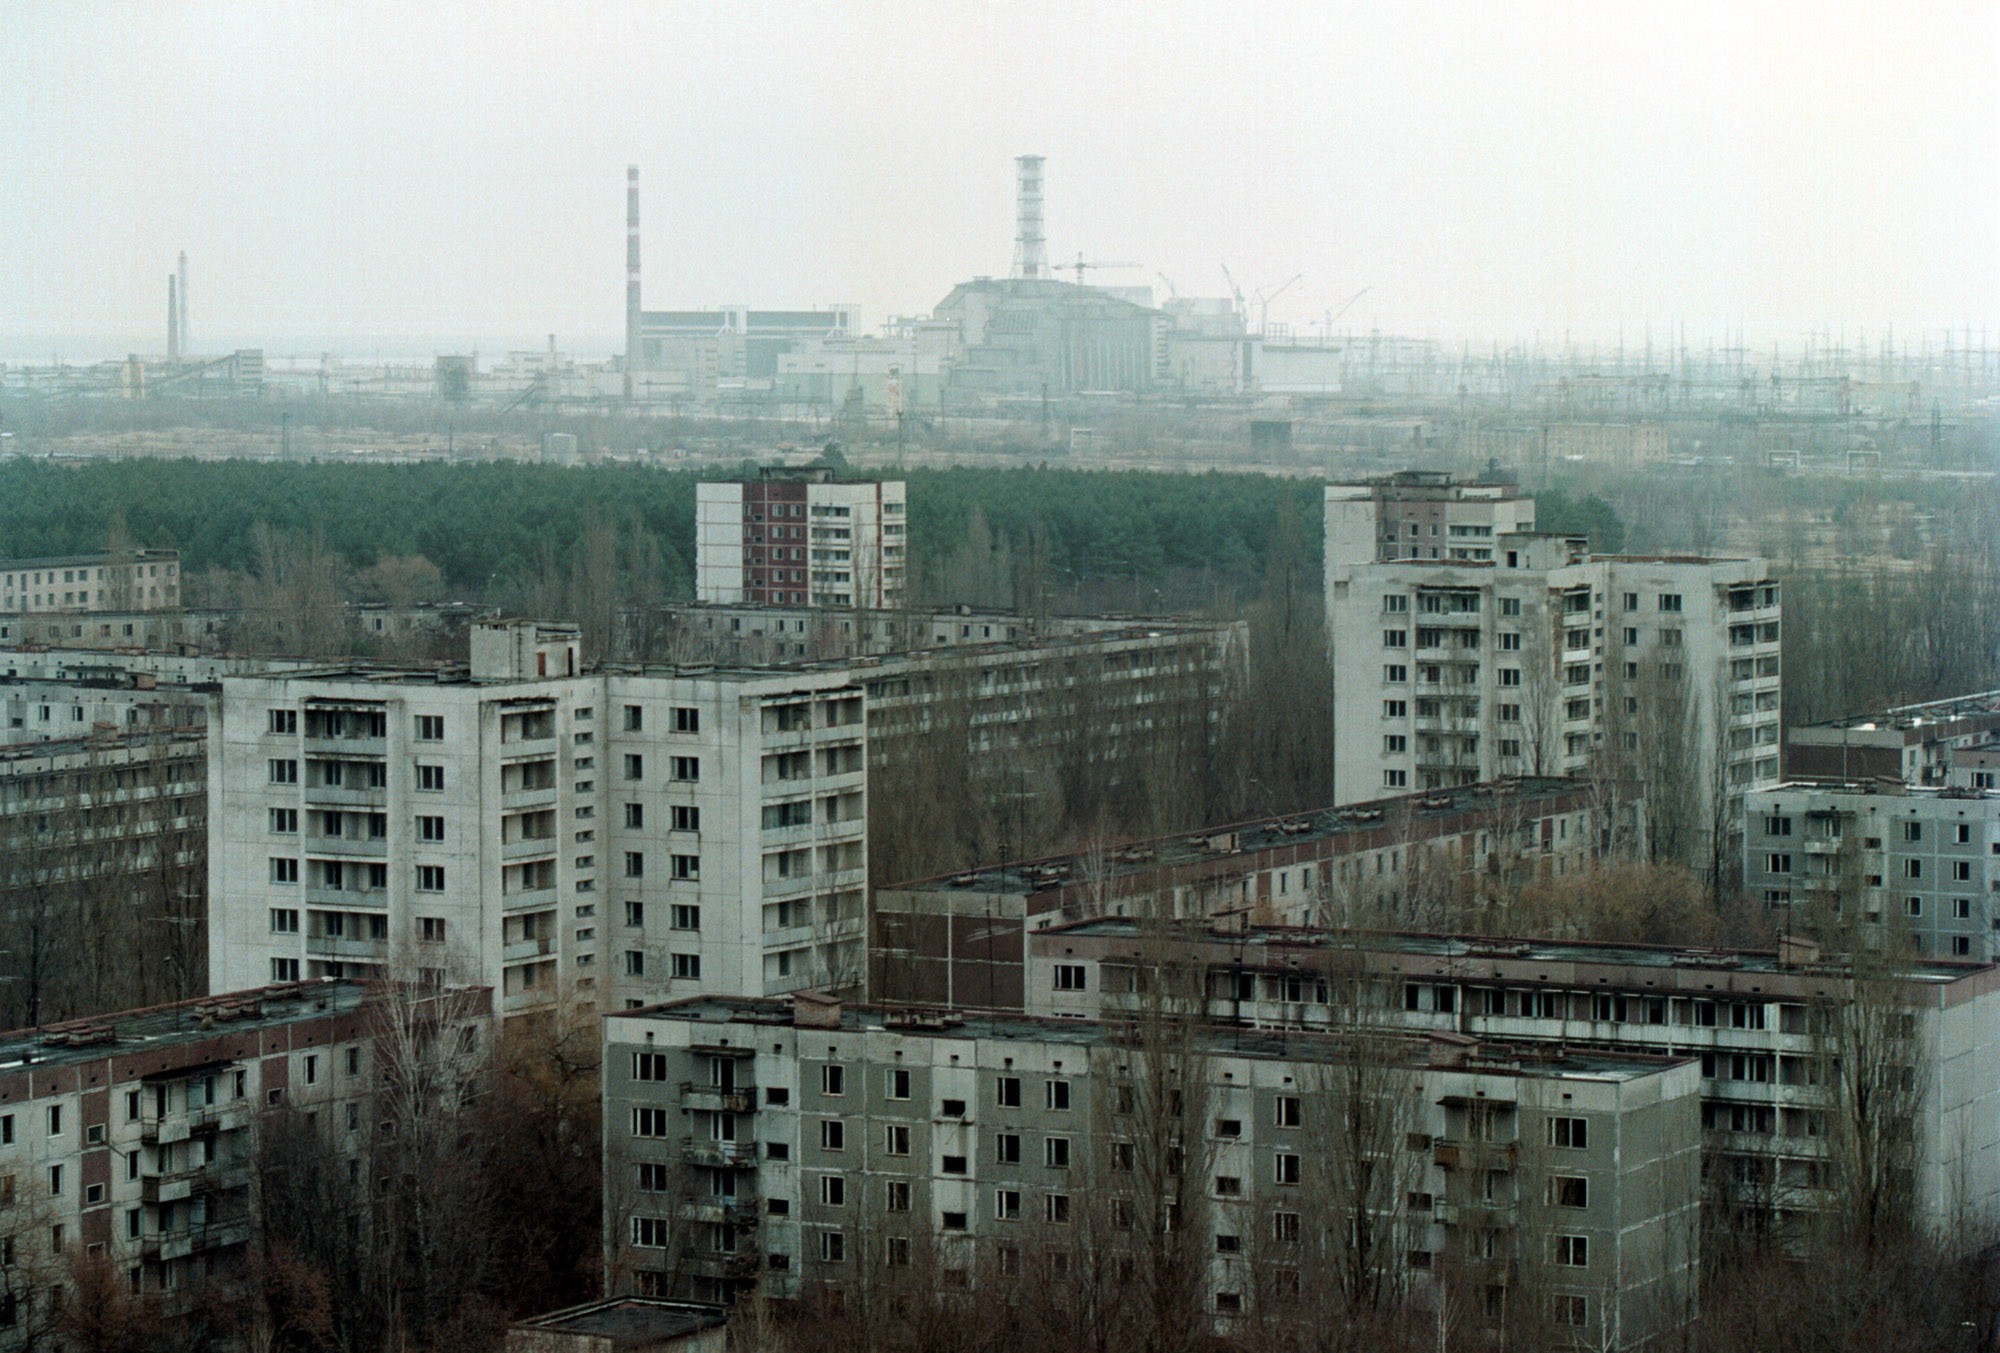 vista da cidade de pripyat com o quarto reator de chernobyl ao fundo - foto tirada em 2000 (Foto: getty)